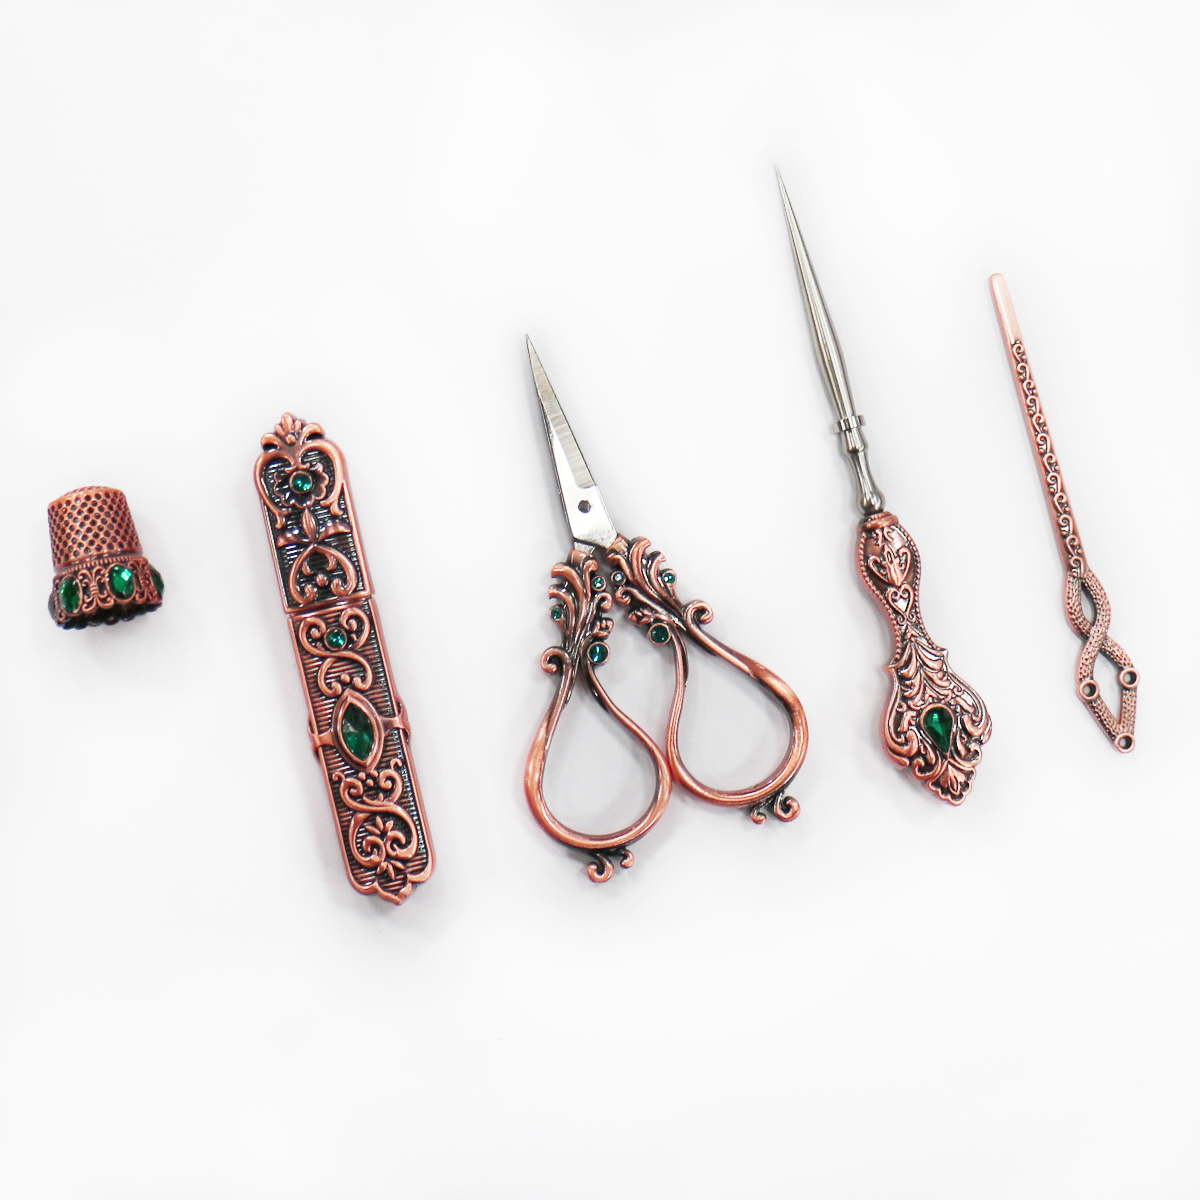 Retro Style Embroidery Scissors Set